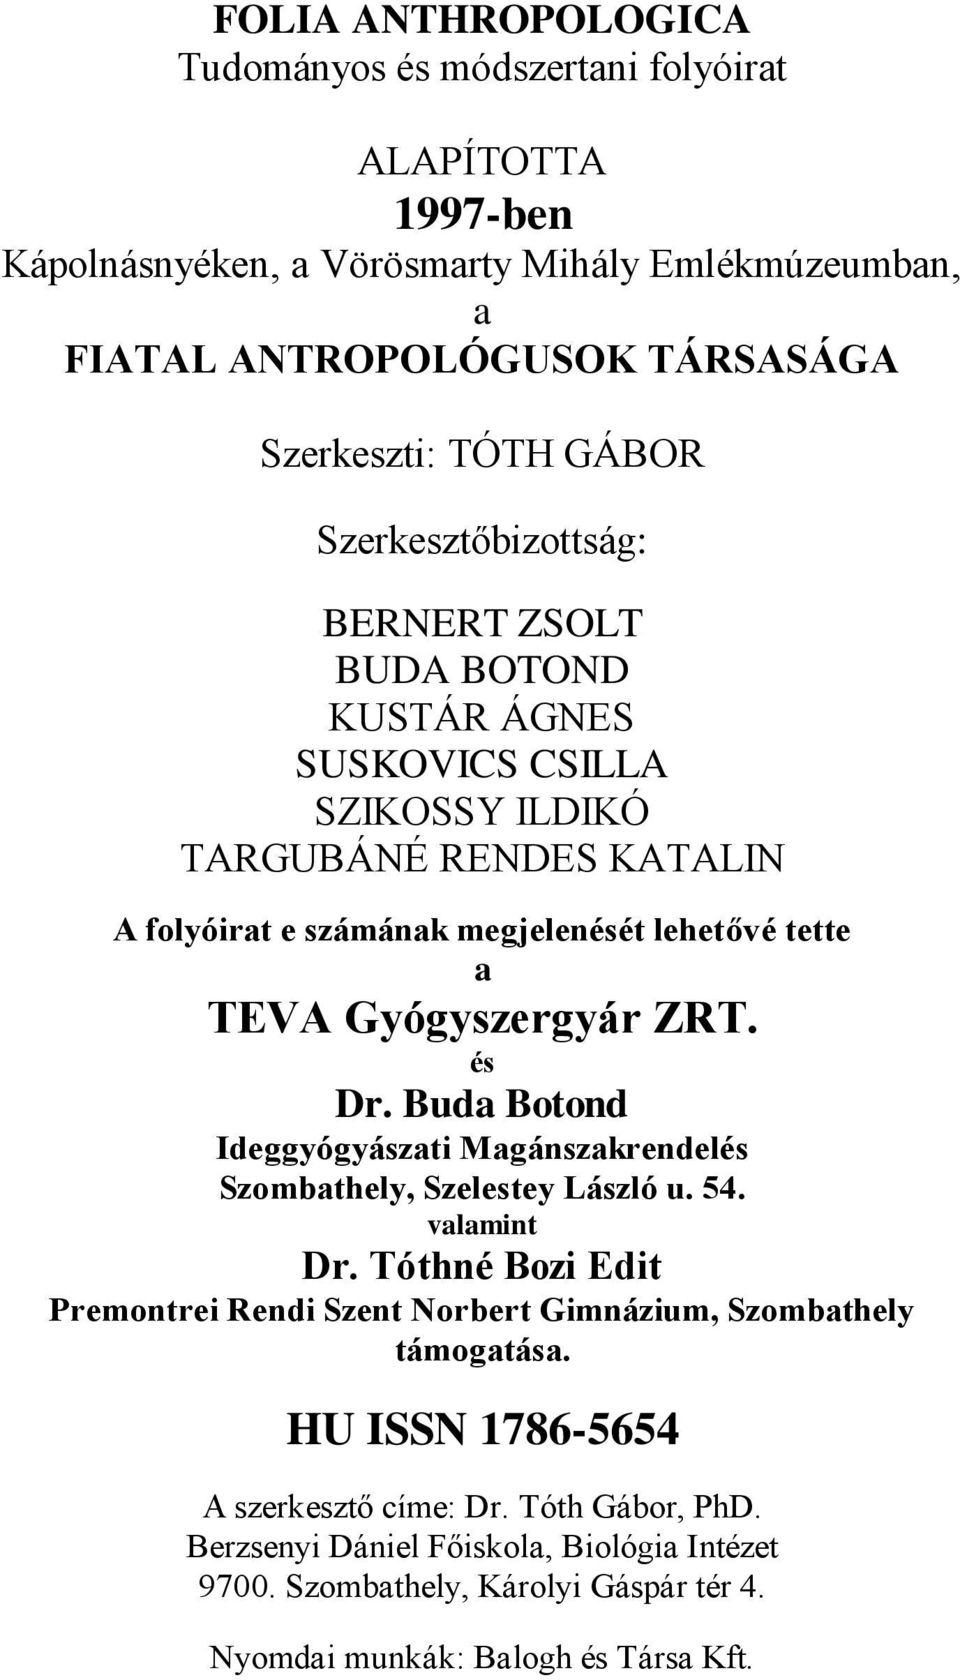 Gyógyszergyár ZRT. és Dr. Buda Botond Ideggyógyászati Magánszakrendelés Szombathely, Szelestey László u. 54. valamint Dr.